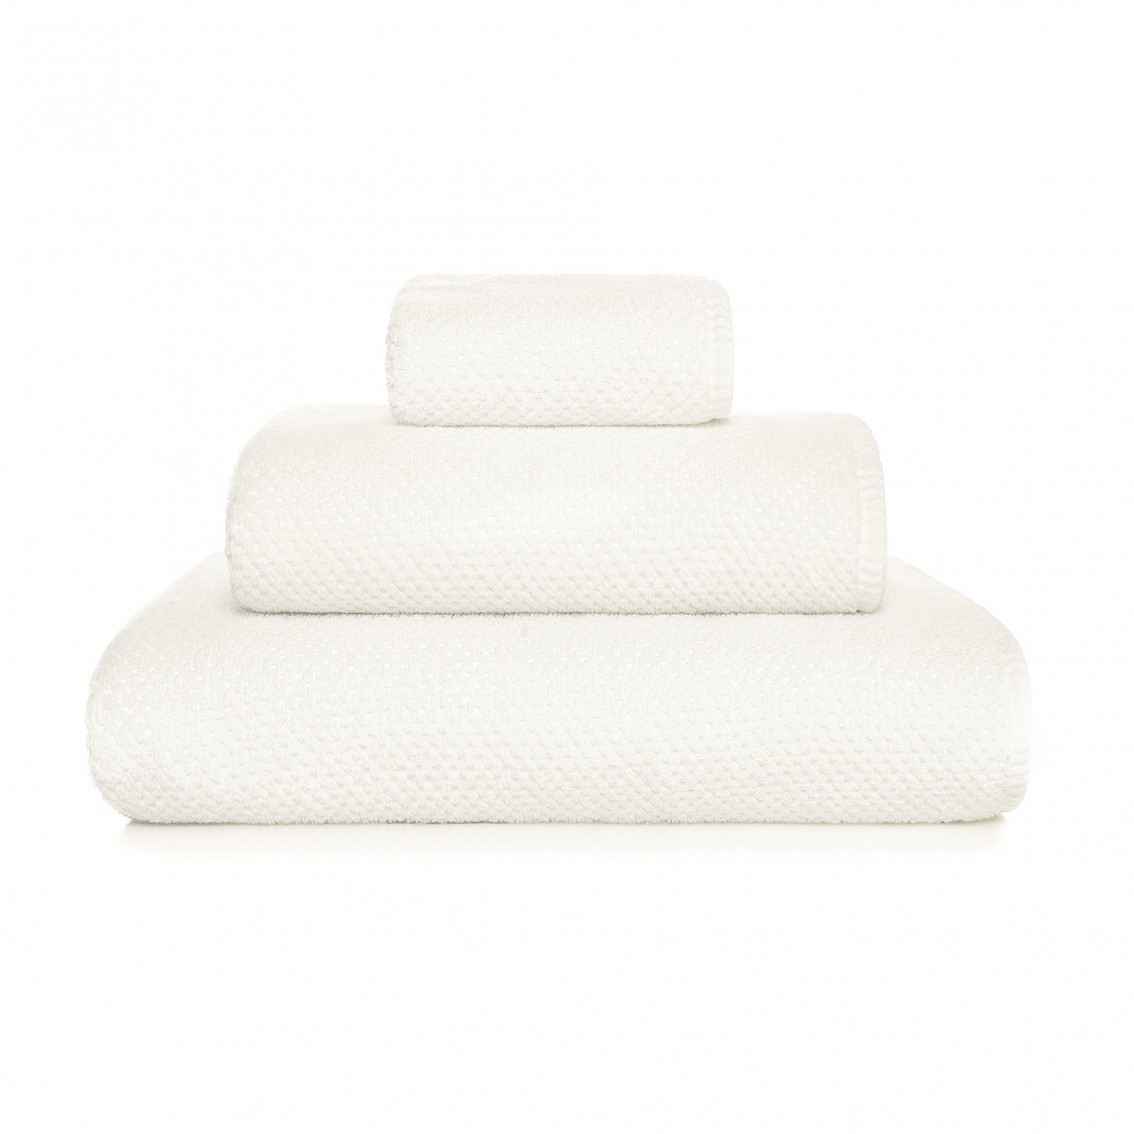 Graccioza Heaven Bath Towels and Rugs (White)